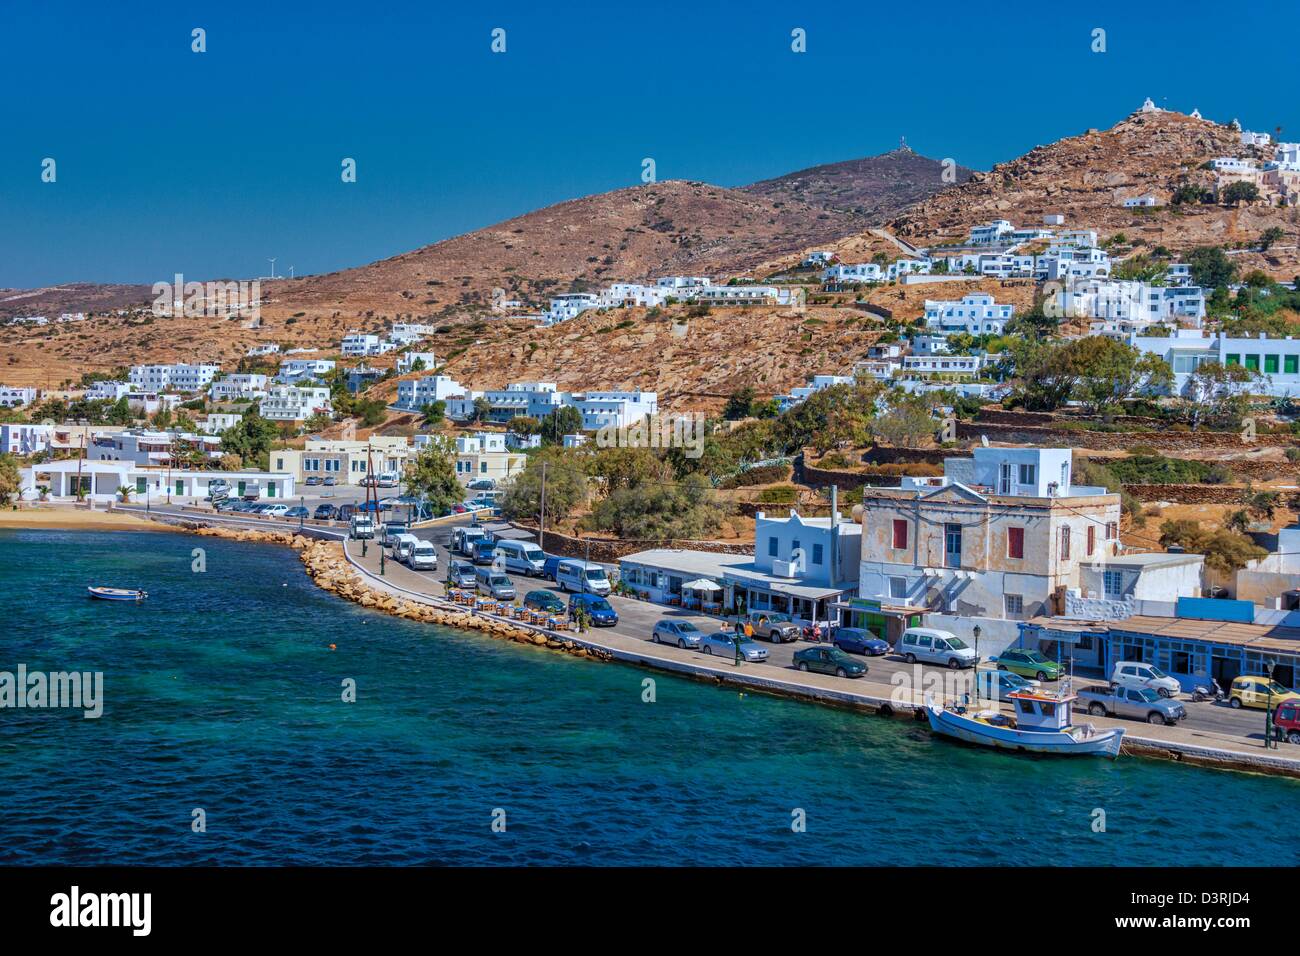 Da Atene di prendere un traghetto per visitare le isole greche, Ios è la prima fermata in viaggi attraverso il Mare Egeo embayment del Mediterraneo Foto Stock